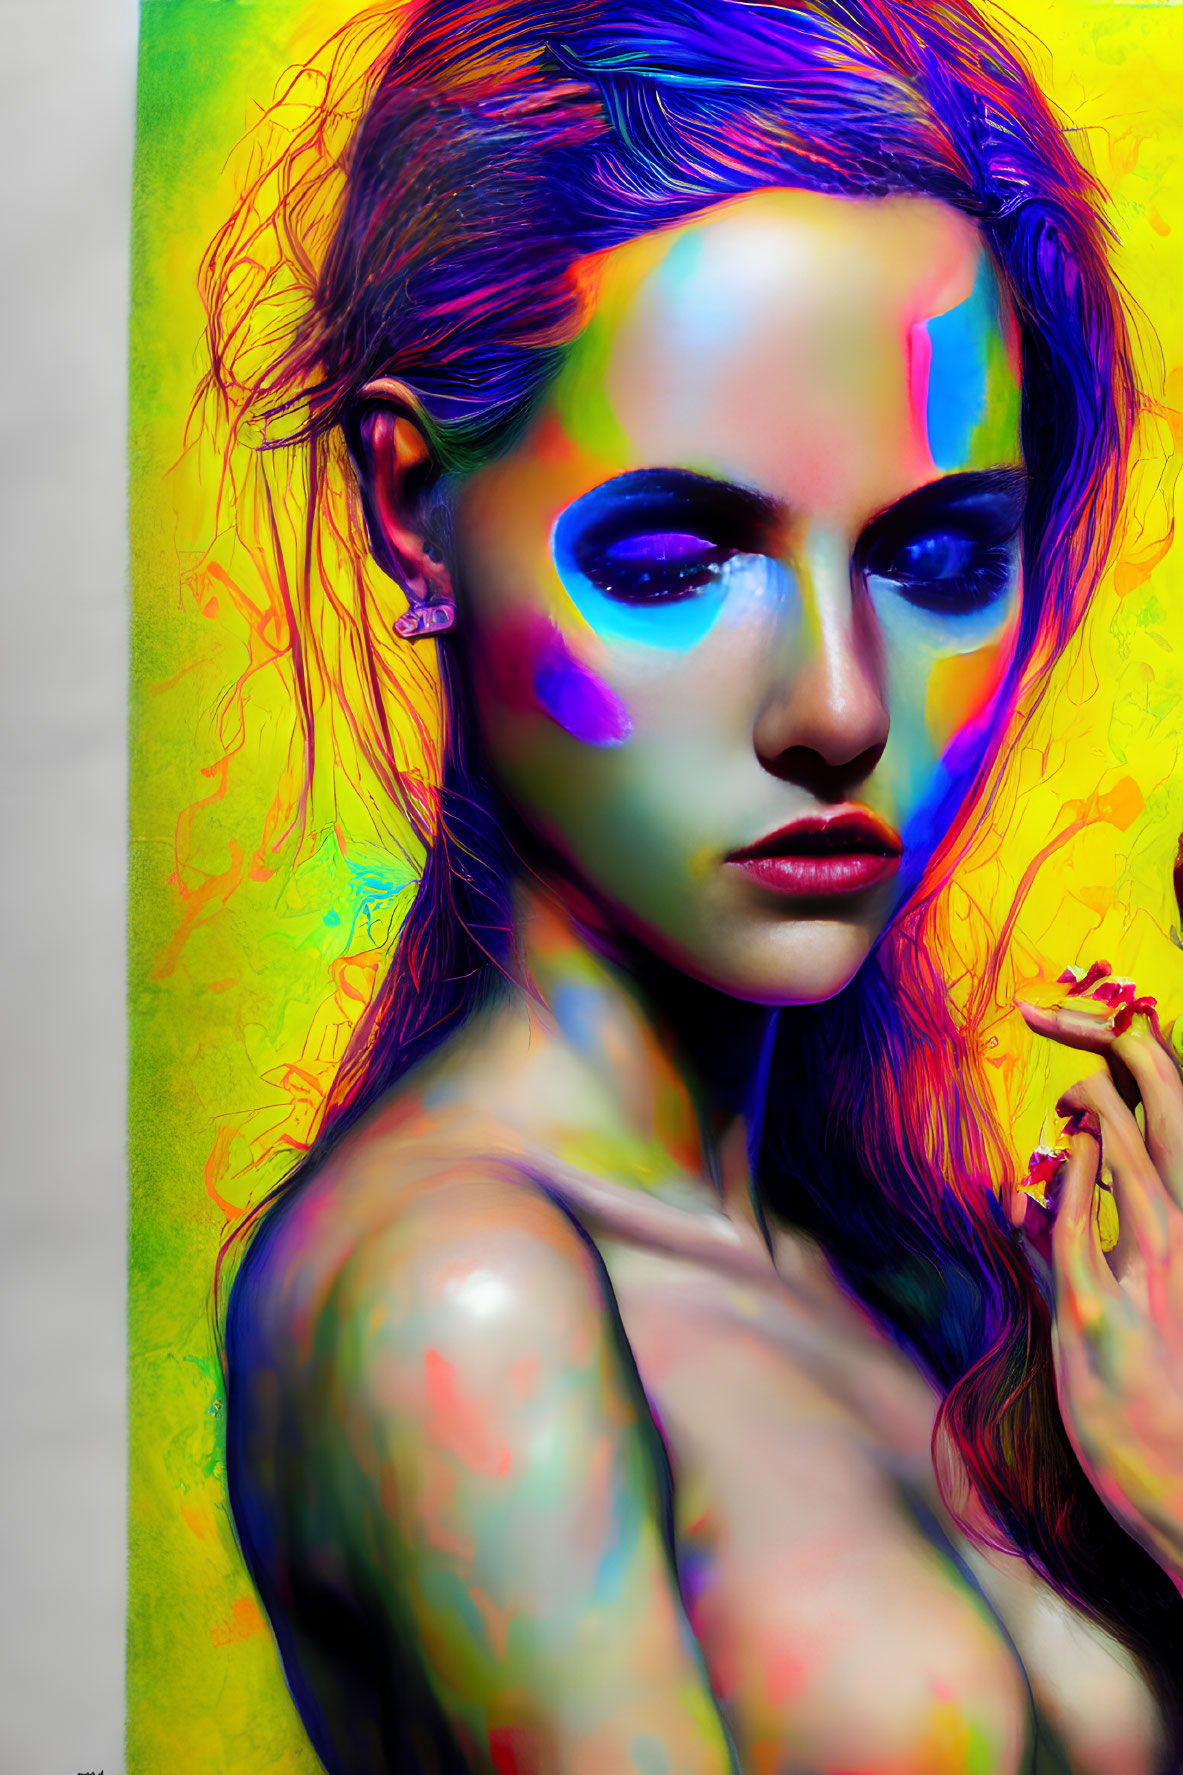 Colorful neon paint portrait of a woman against vibrant backdrop